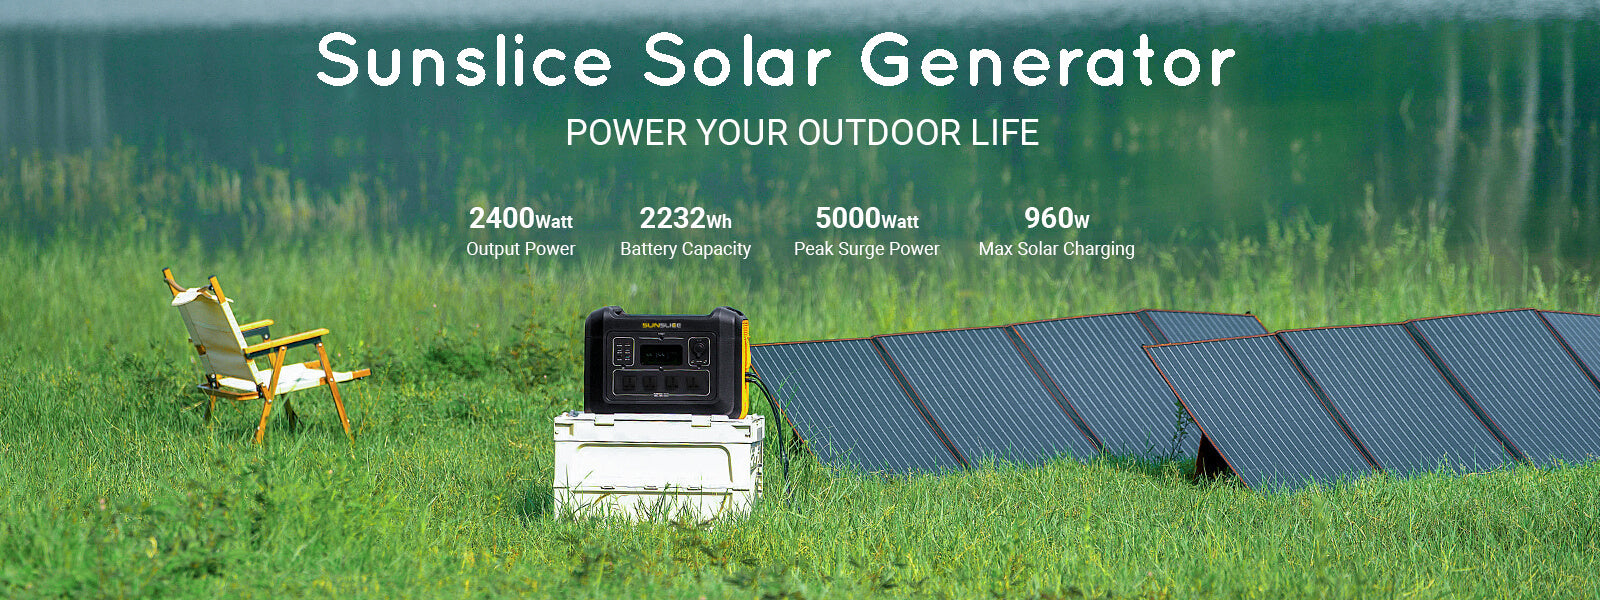 draagbaar zonnepaneel voor kamperen op het groene gras met een zonnegenerator voor thuis ernaast